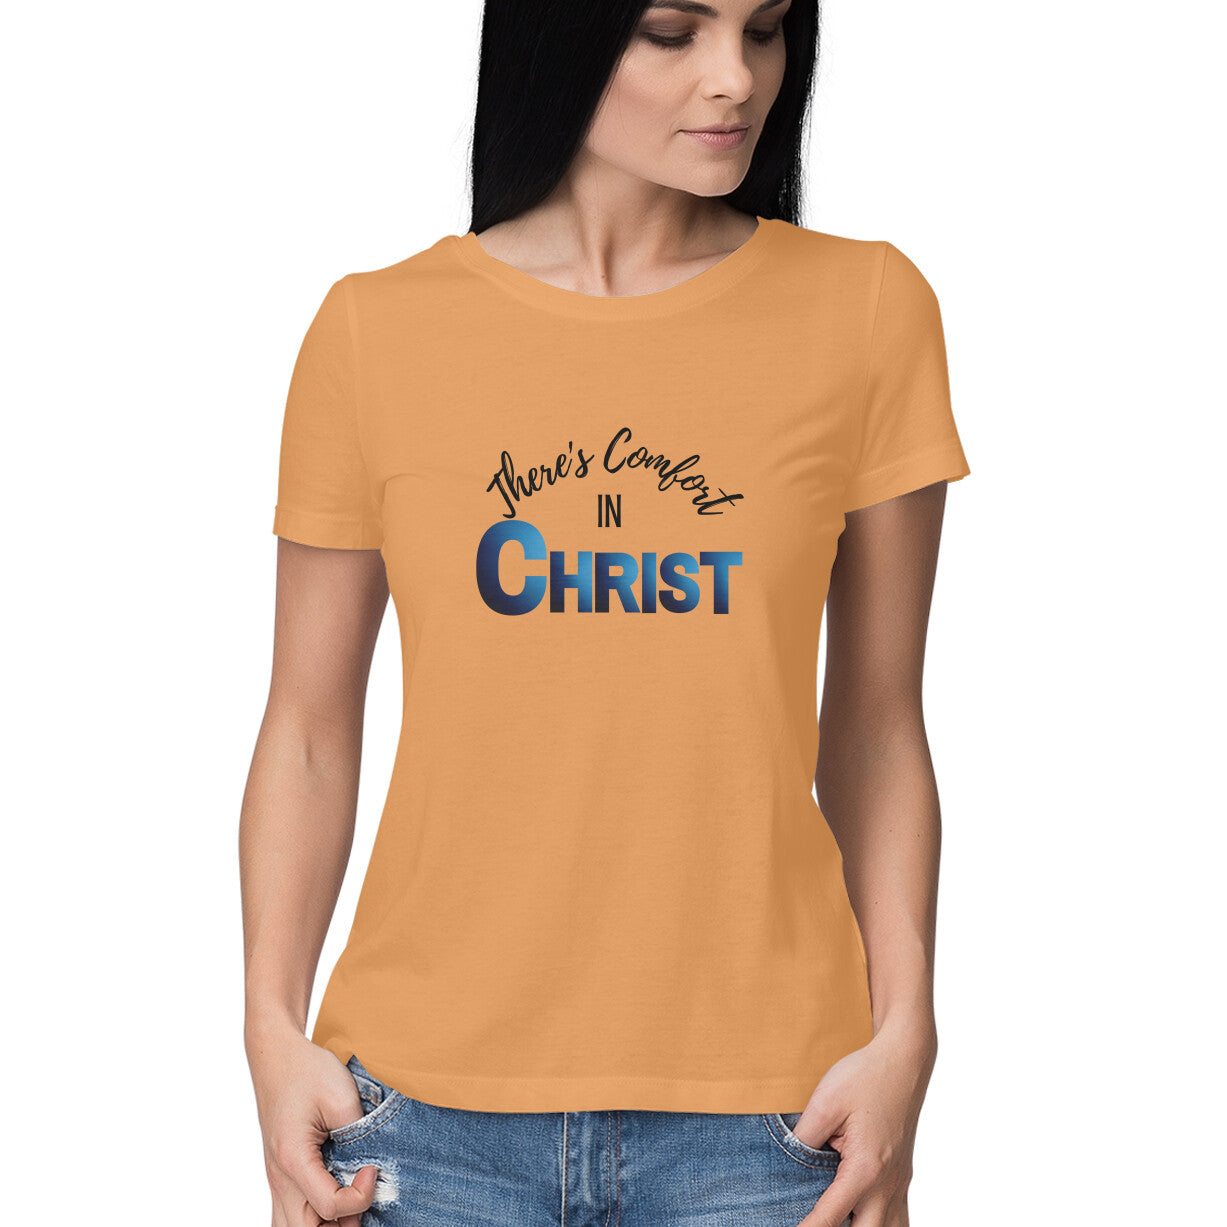 Comfort in Christ' Women's tee